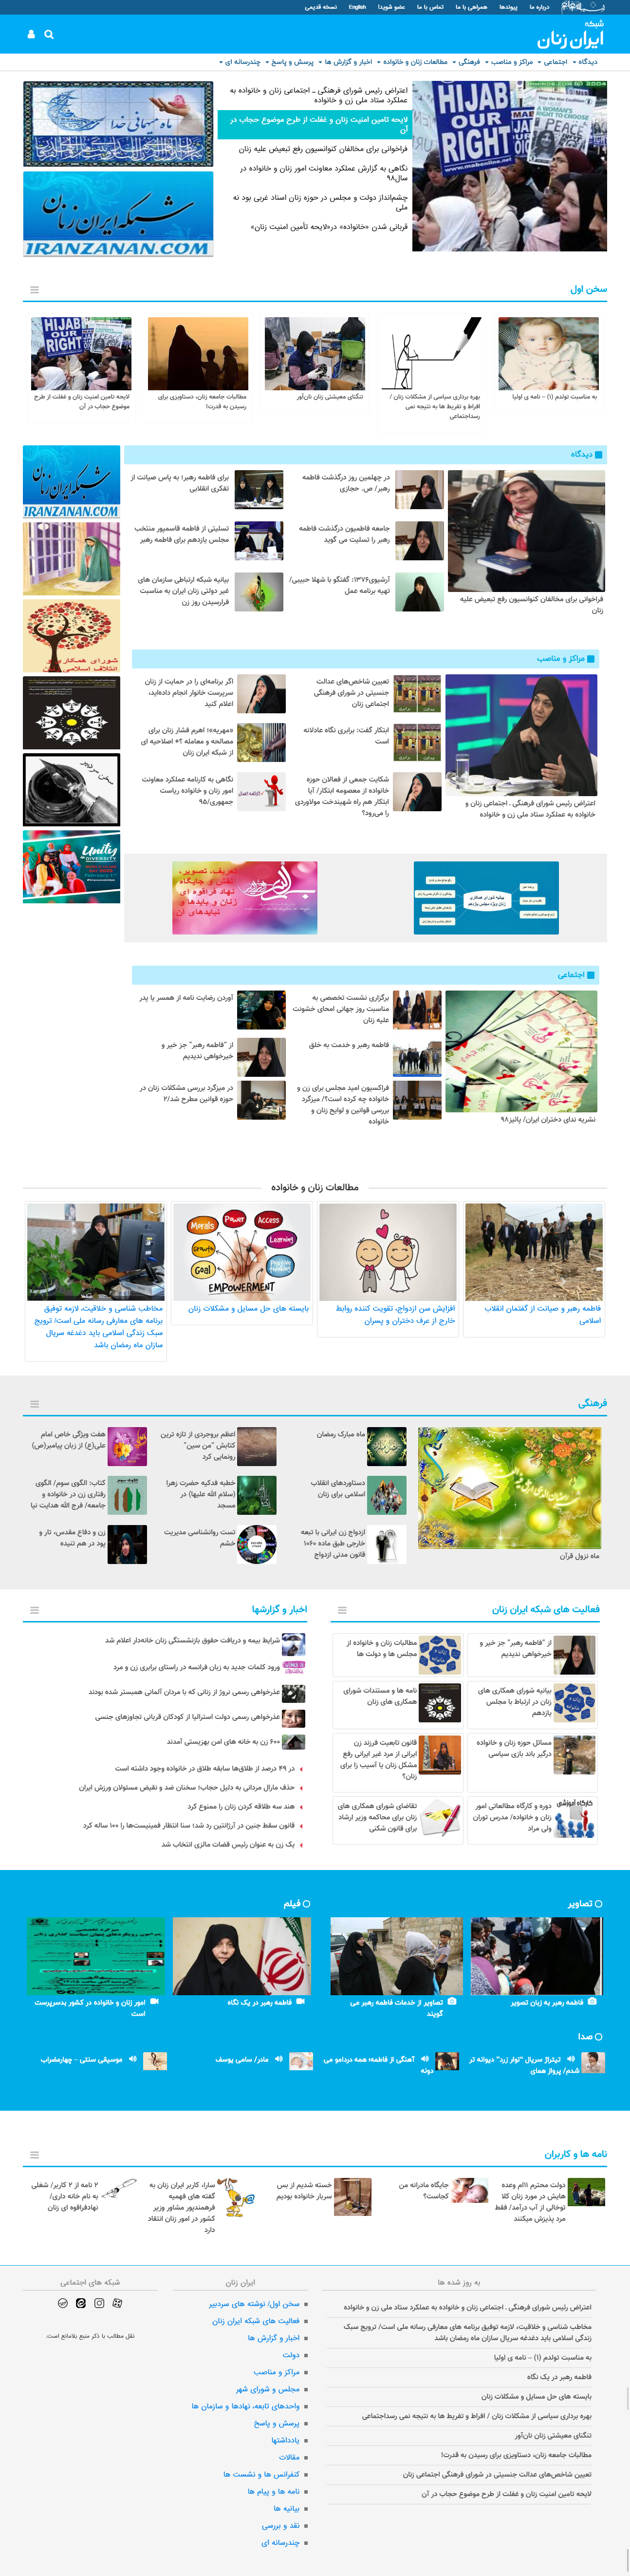 طراحی سایت تحلیلی ایران زنان